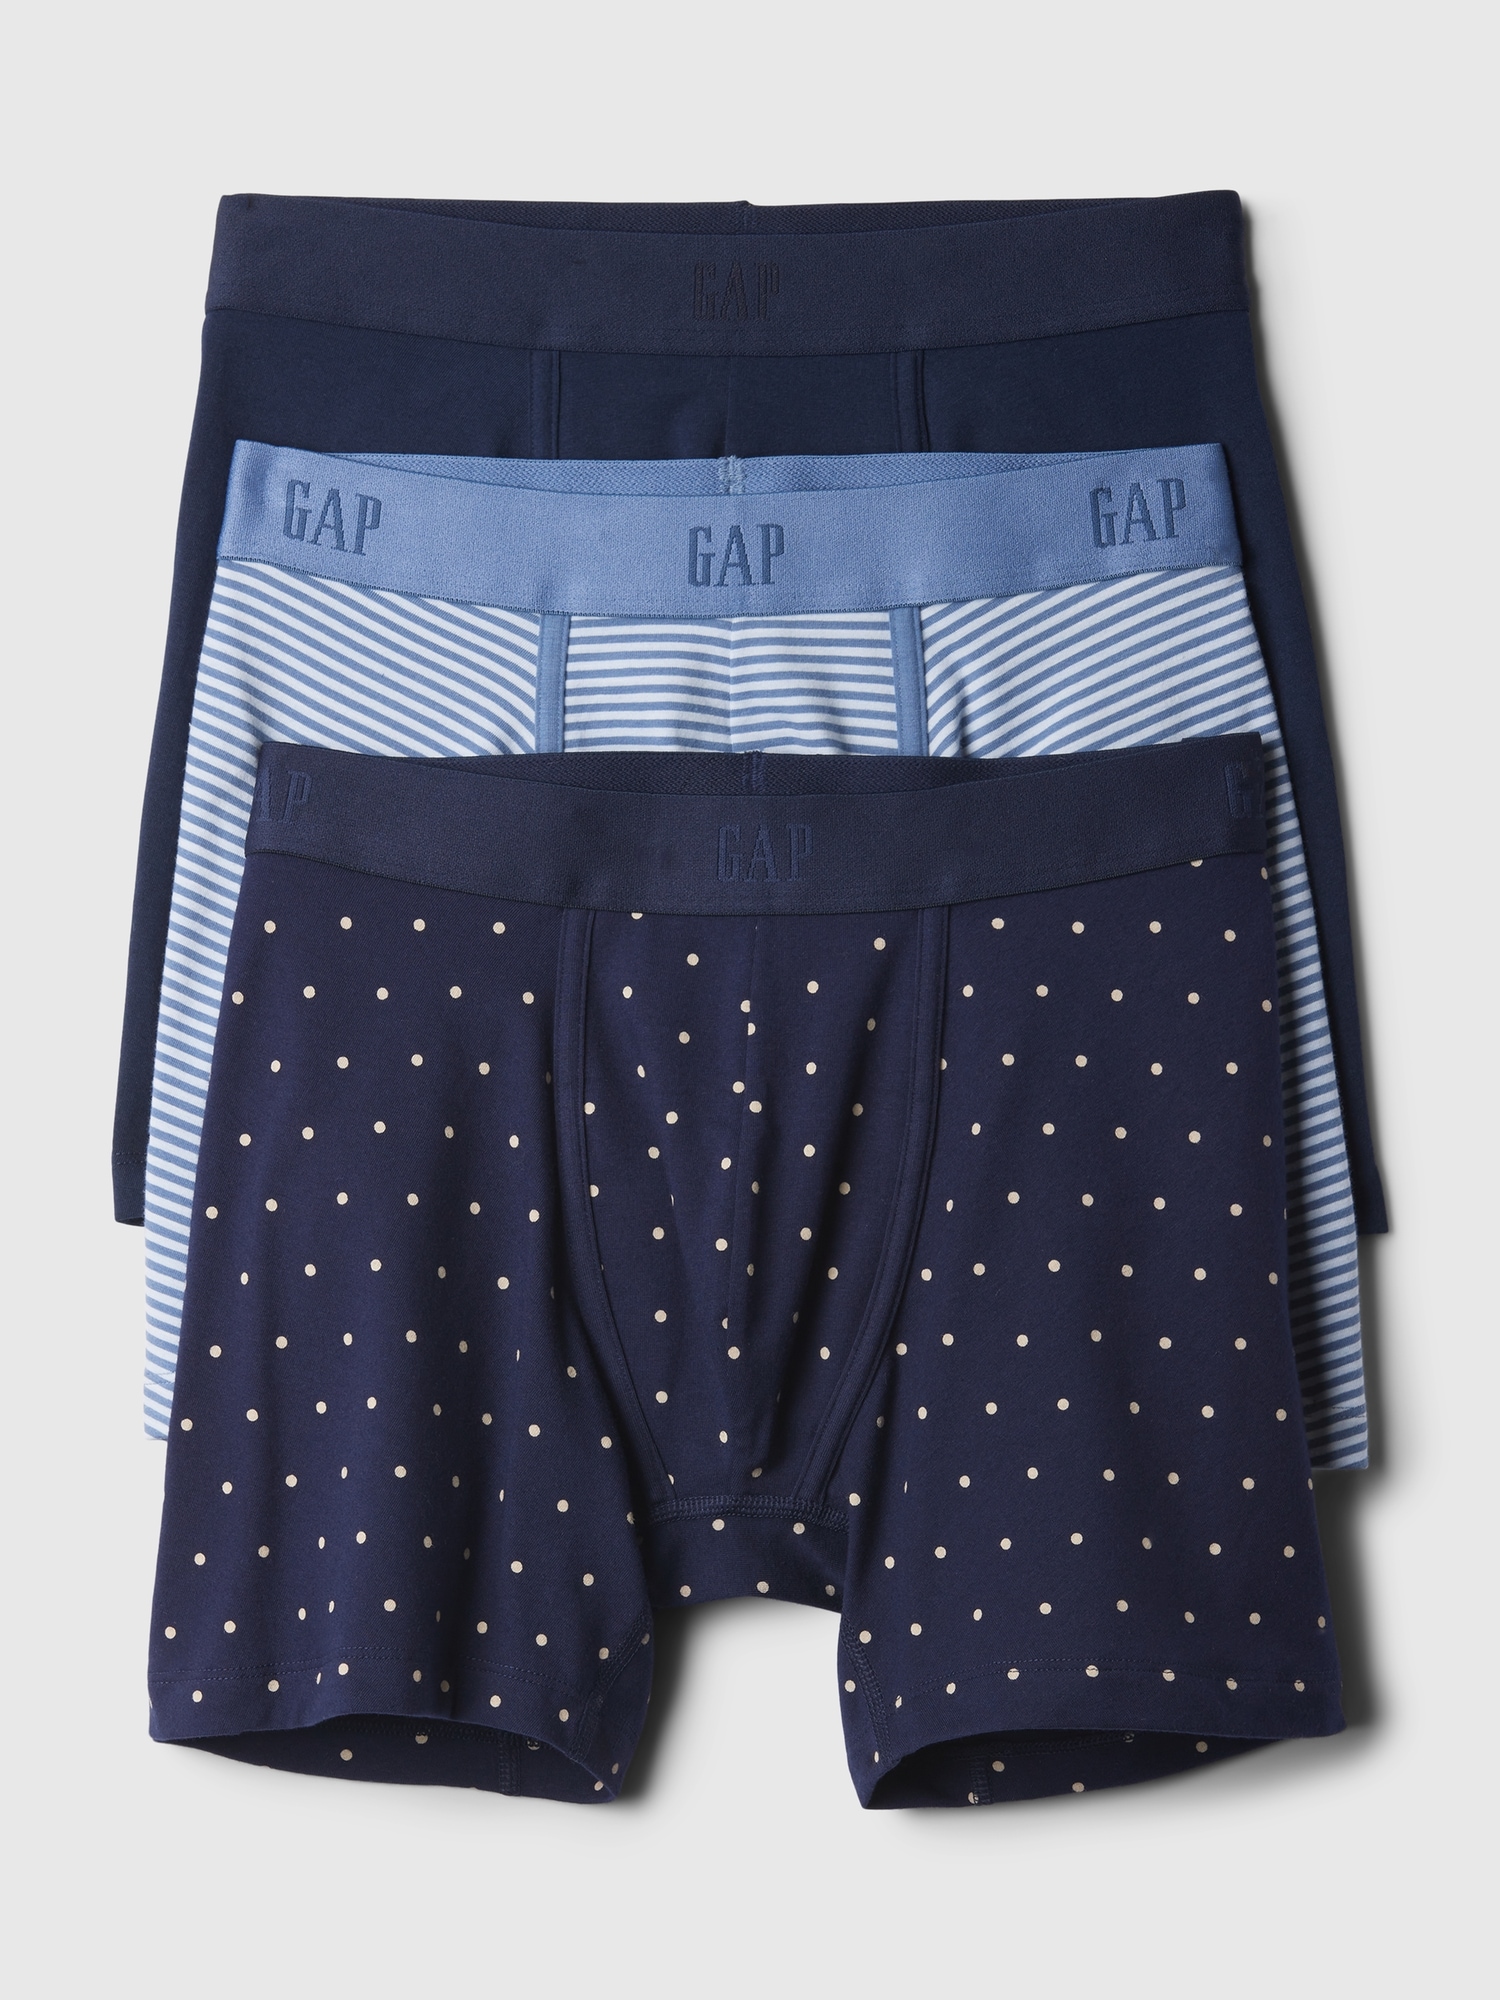 5 Pack Men Underwear Staple Boxers Briefs PSD Shorts Pants (Random Color)